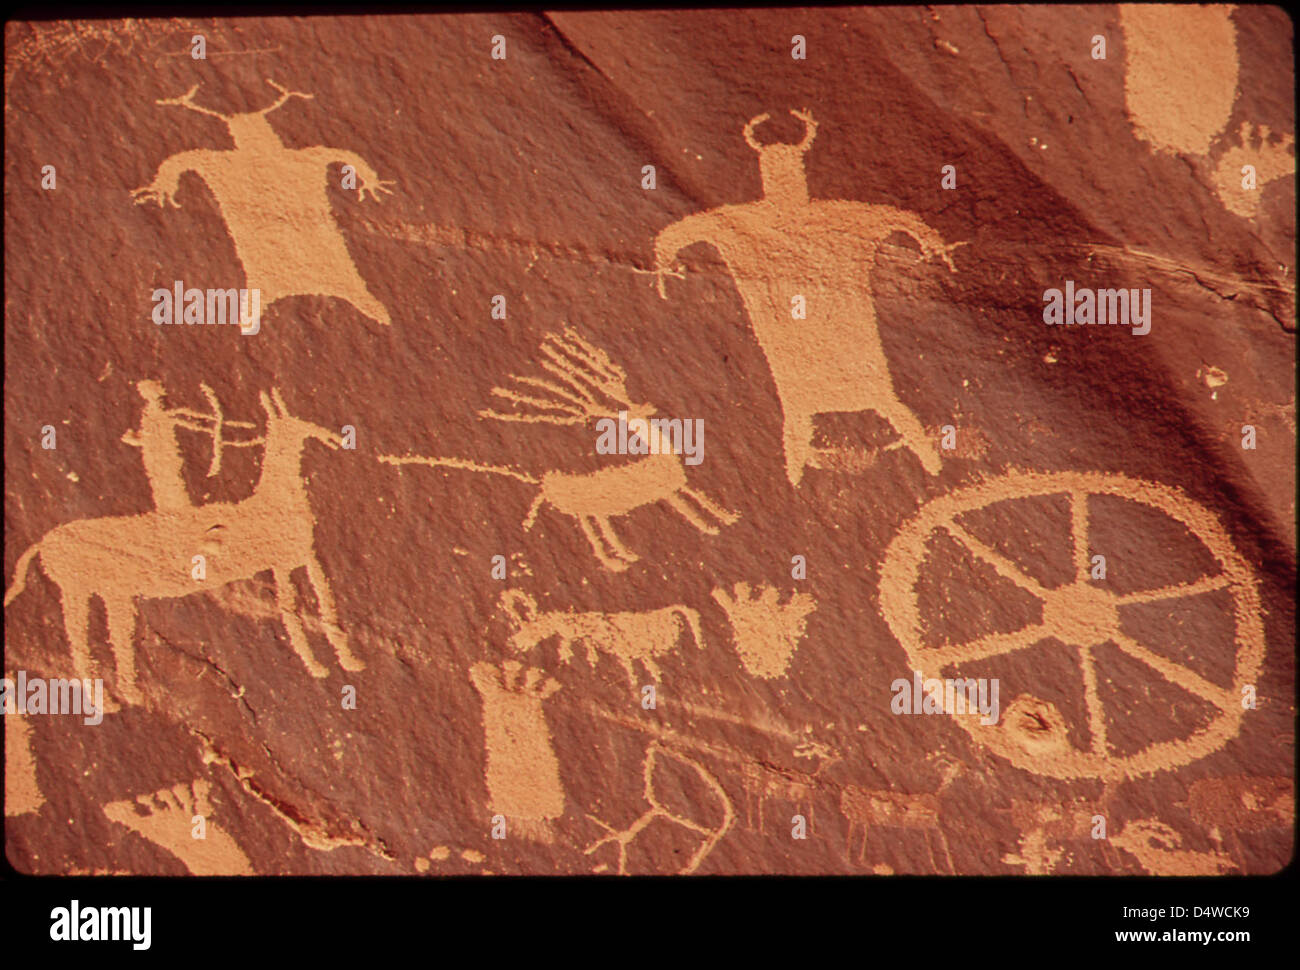 Le journal Rock est une grande fresque murale de falaise de pétroglyphes et de Pictographes indiens anciens, remarquable pour la clarté de ses nombreuses figures, 05/1972 Banque D'Images